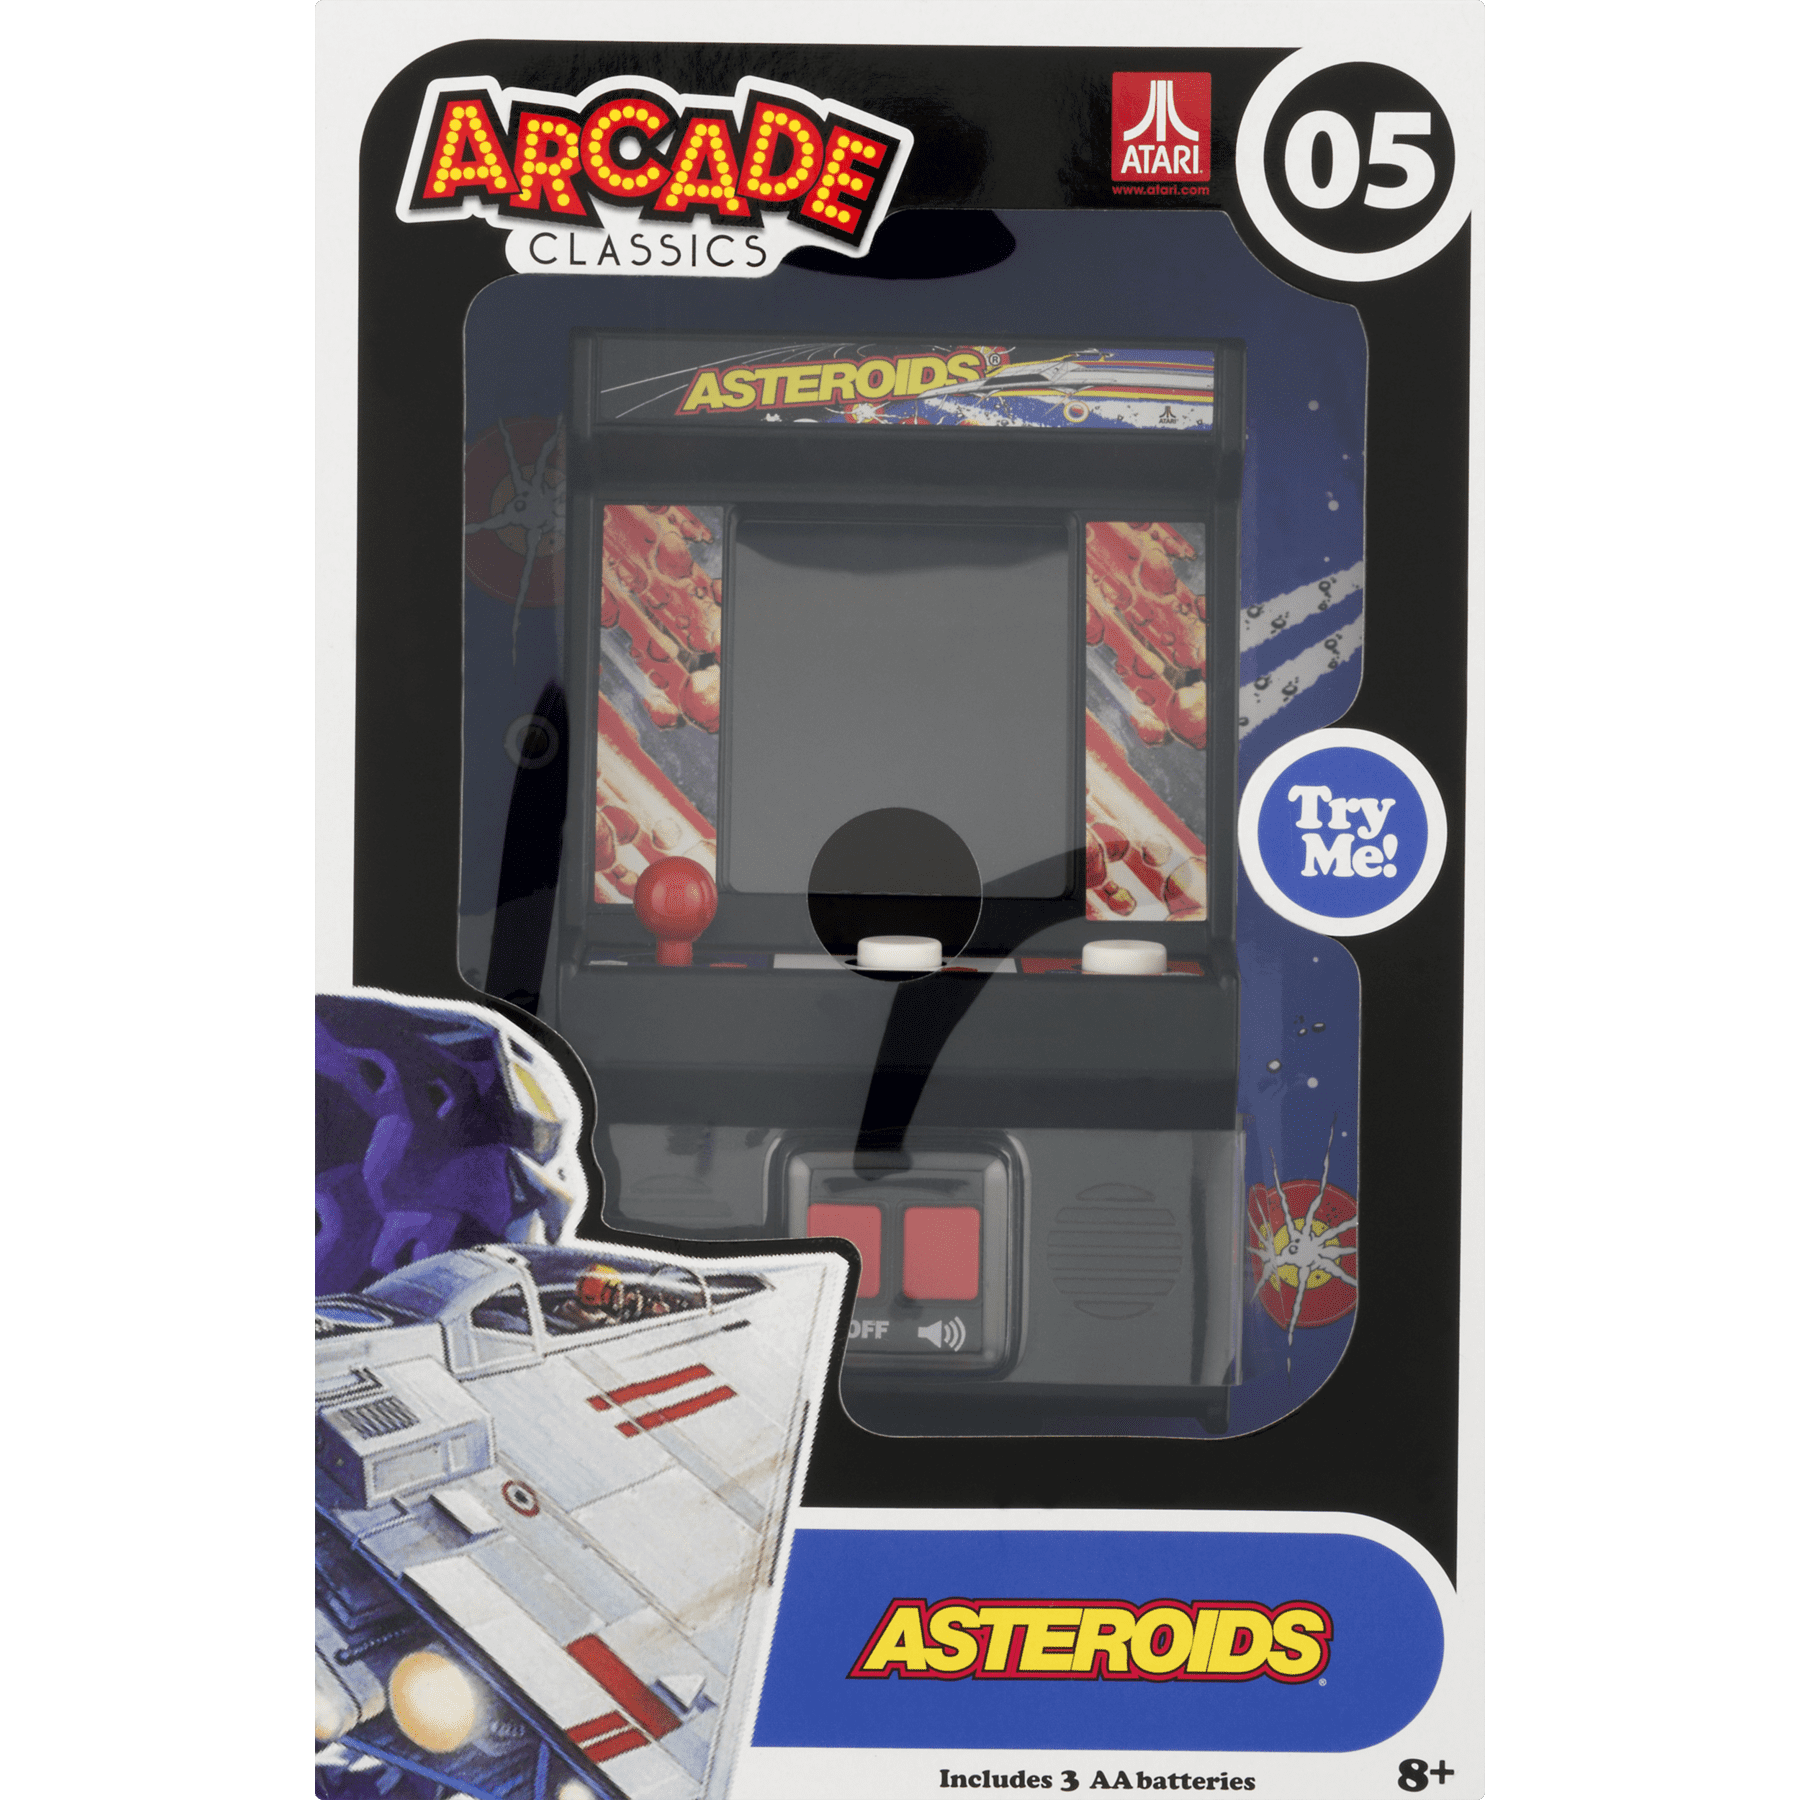 Arcade Classics Asteroids Retro Handheld Arcade Game 